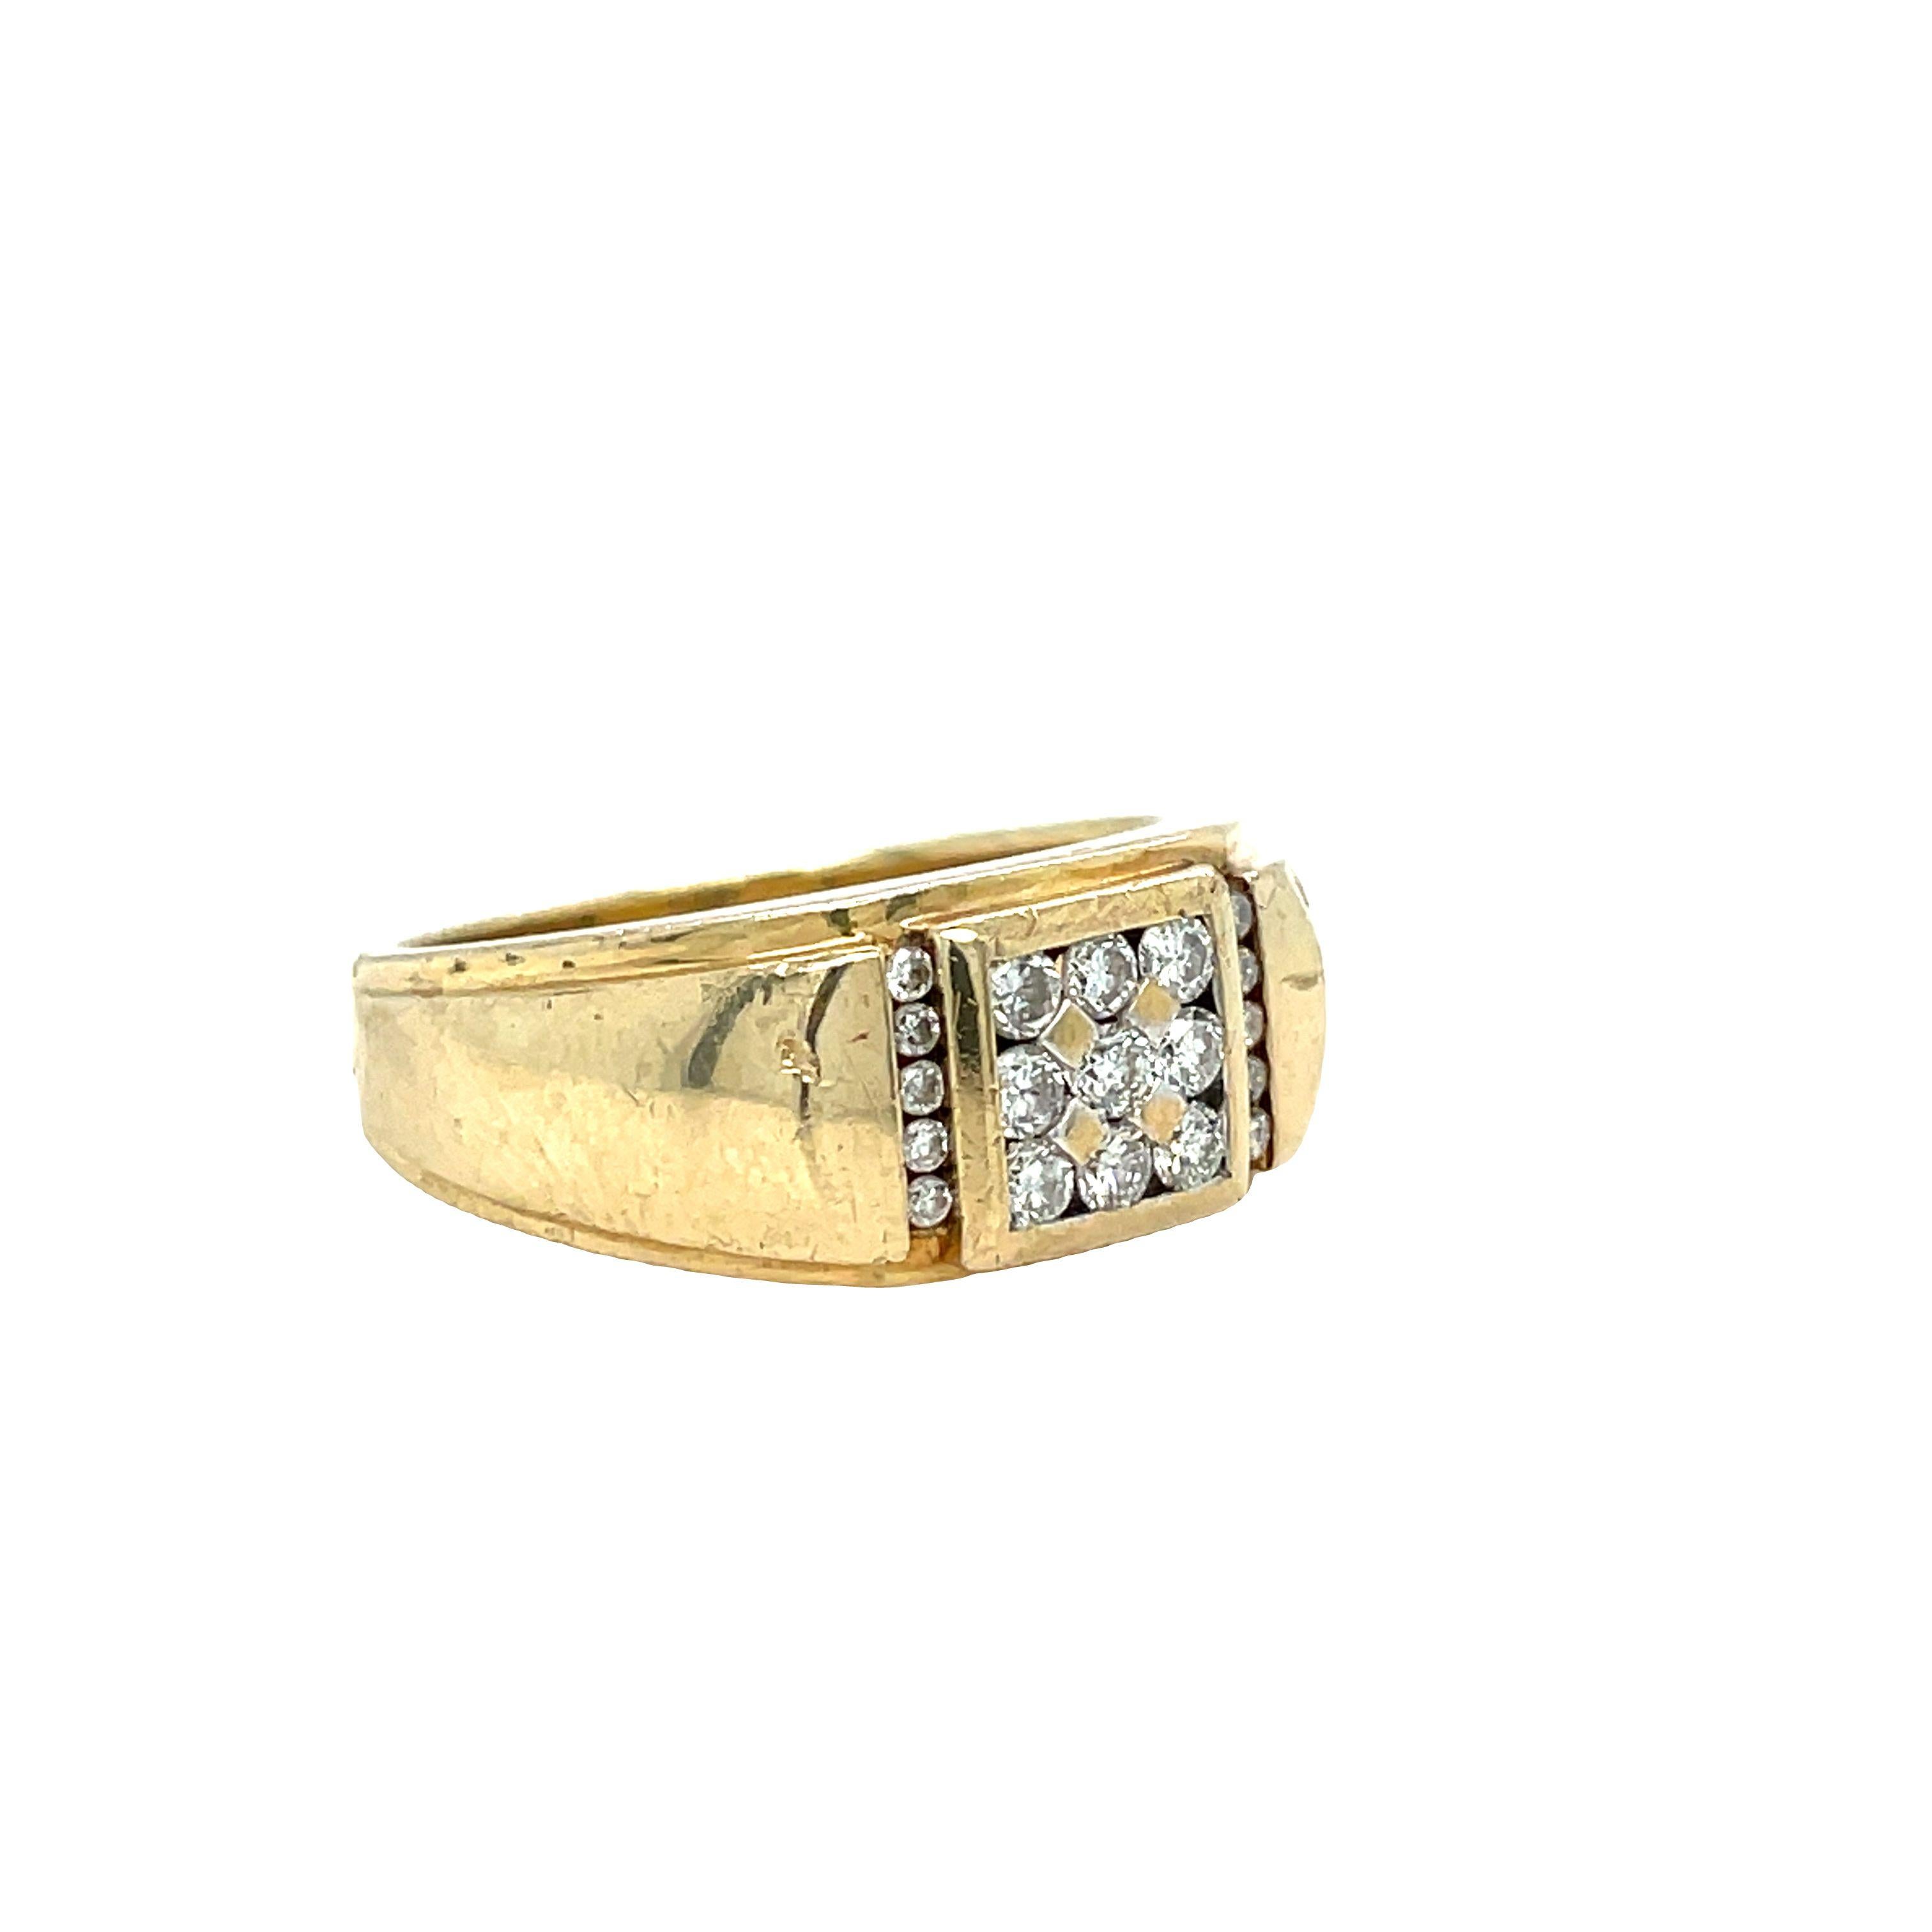 Dieser Herrenring aus 14-karätigem Gelbgold ist mit Eleganz gefertigt und präsentiert neunzehn runde Diamanten im Brillantschliff mit einem Gesamtgewicht von etwa 0,55 Karat. In der Mitte des Rings teilen sich neun schillernde runde Diamanten im